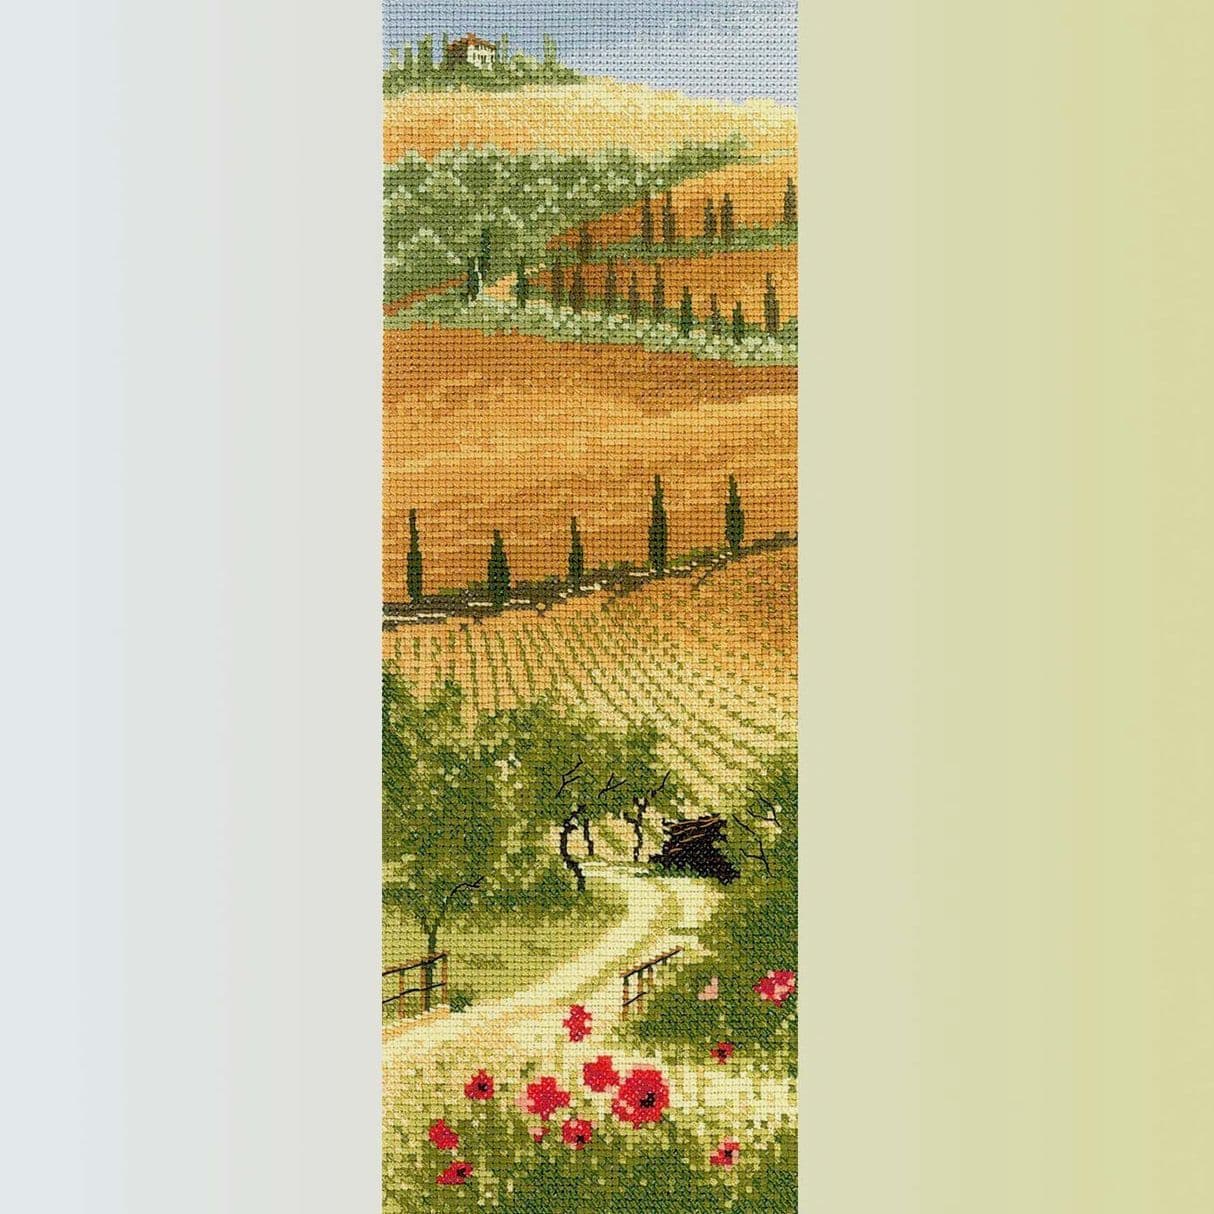 вышивка крестом пейзаж панорама панель Клейтона